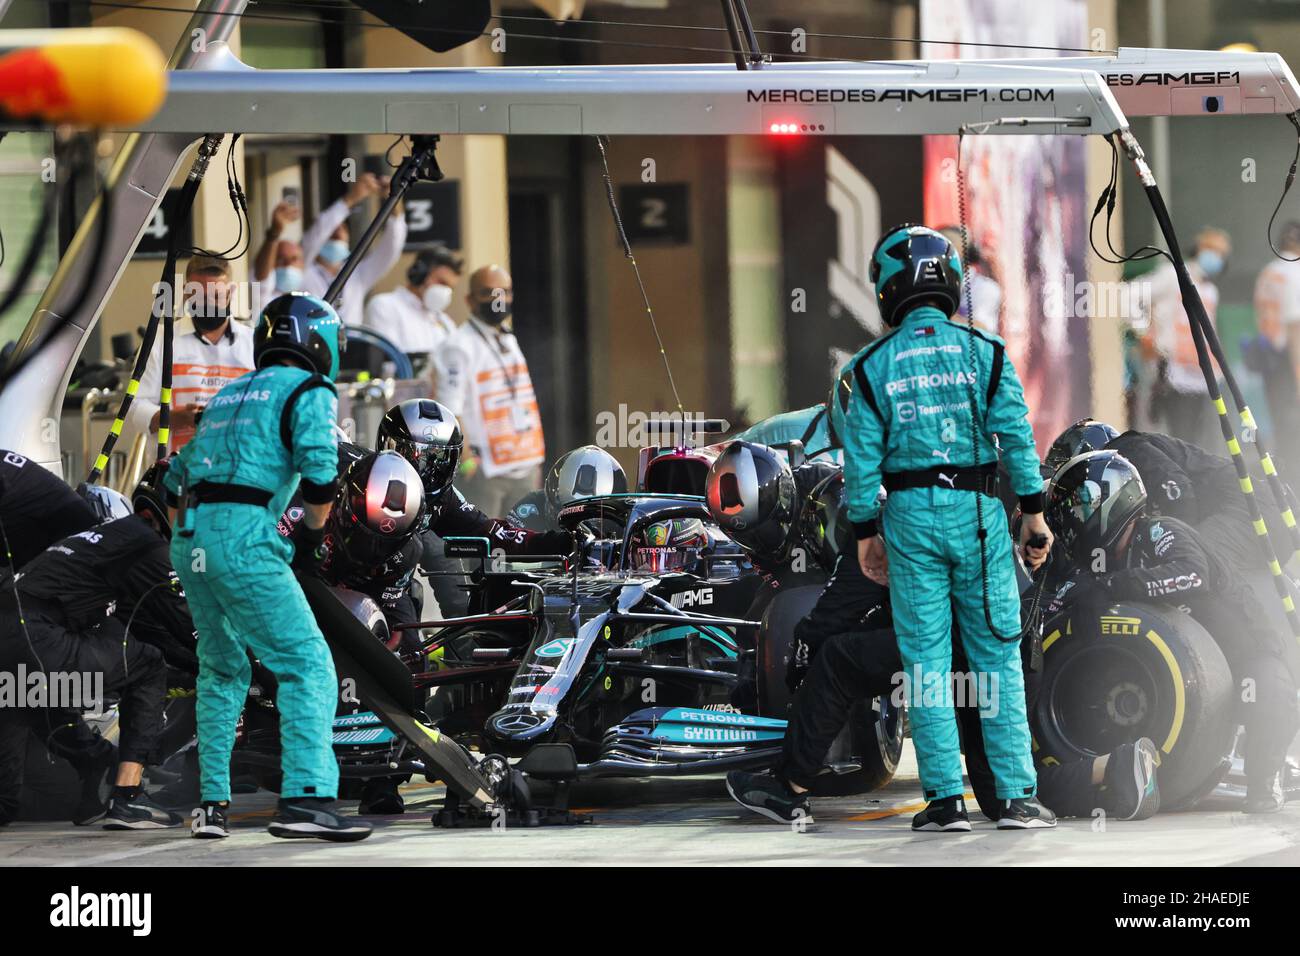 Abu Dhabi, Abu Dhabi. 12th Dec, 2021. Lewis Hamilton (GBR) Mercedes AMG F1 W12 makes a pit stop